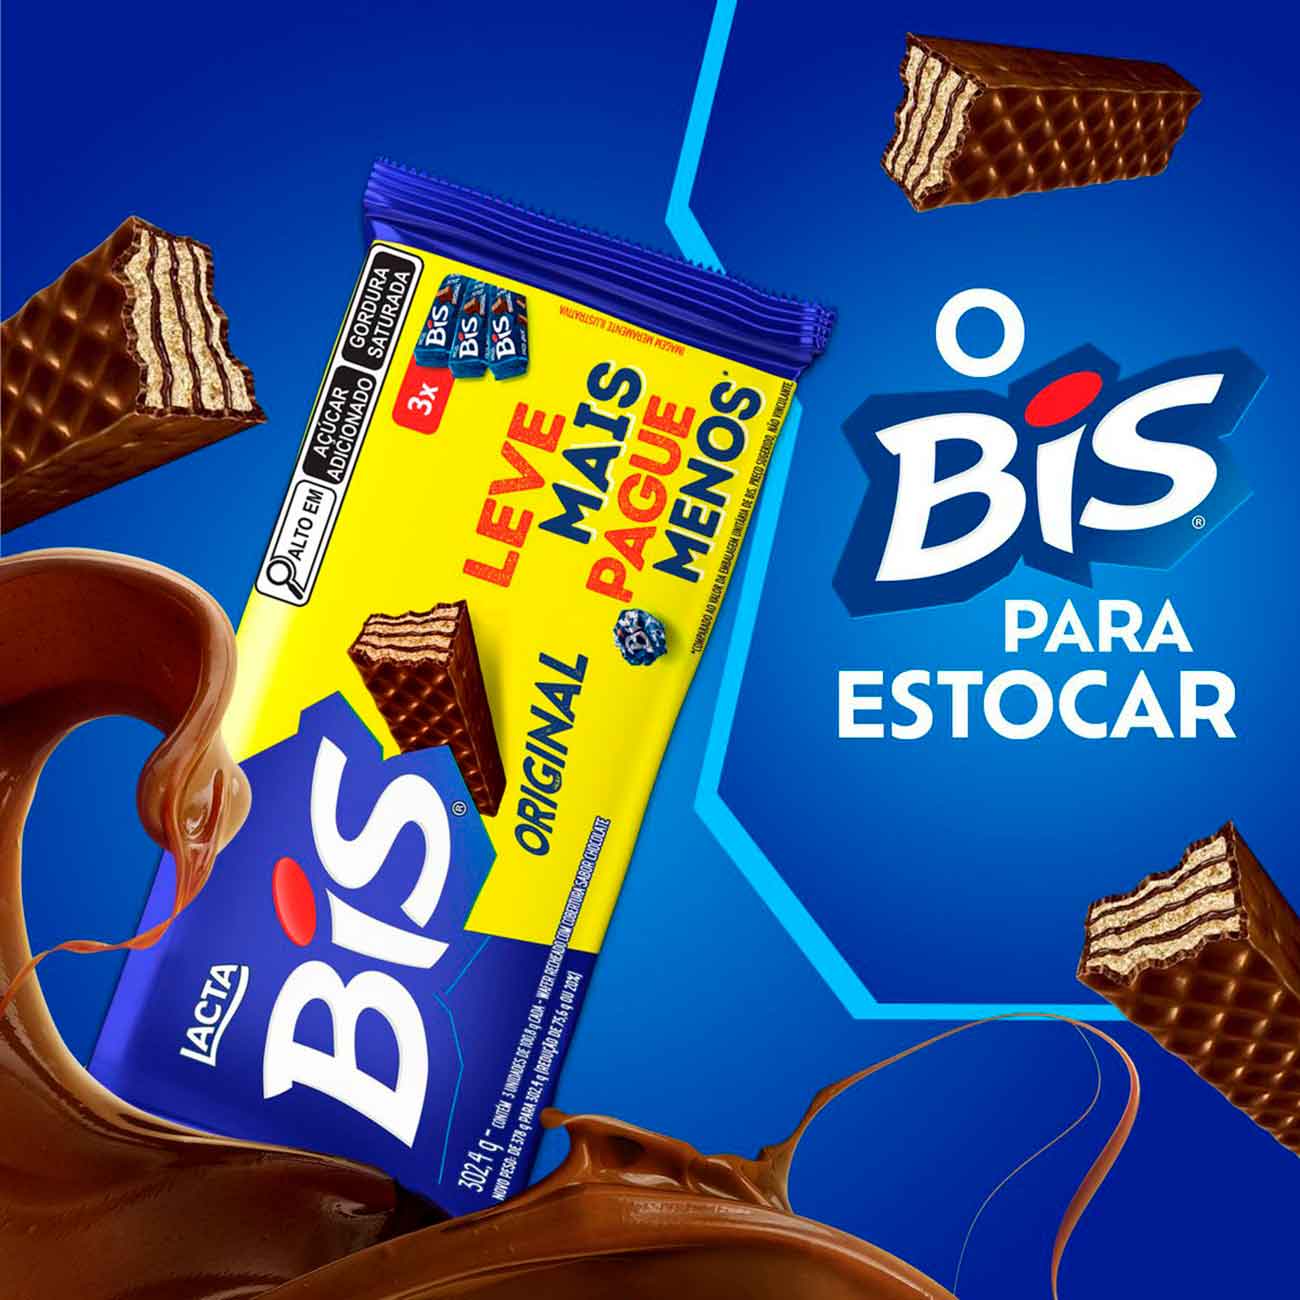 Chocolate Bis Ao Leite - Kit com 3 Unidades de 100,8g